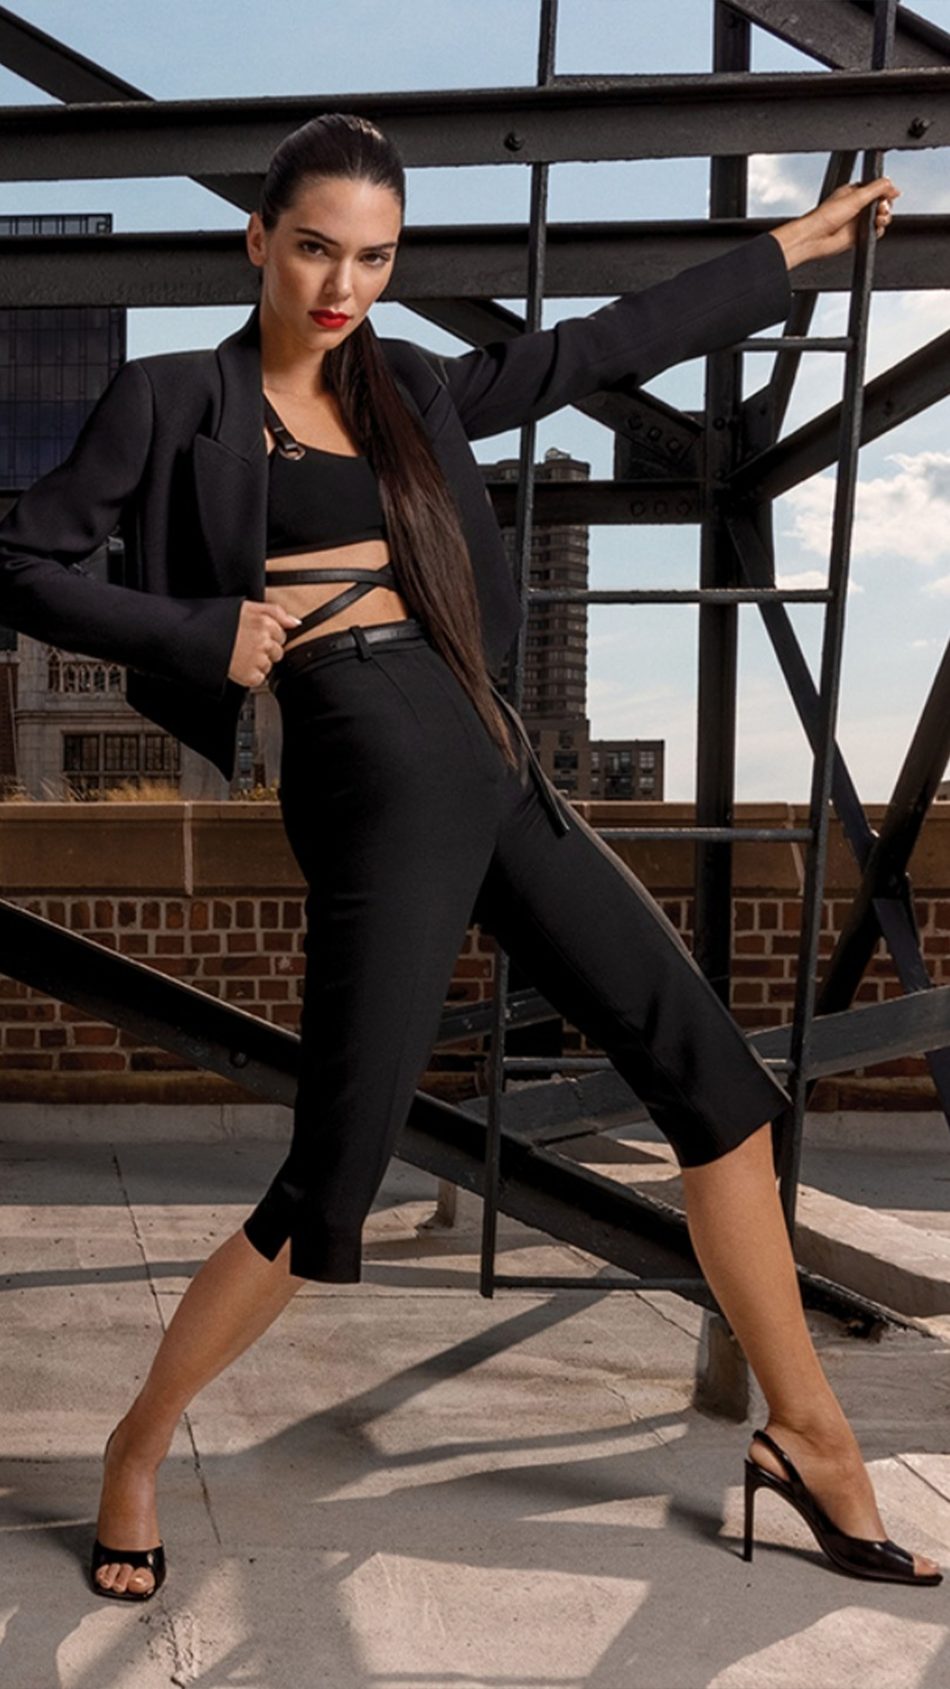 Model Kendall Jenner In Black Dress Photoshoot 2022 4K Ultra HD Mobile Wallpaper